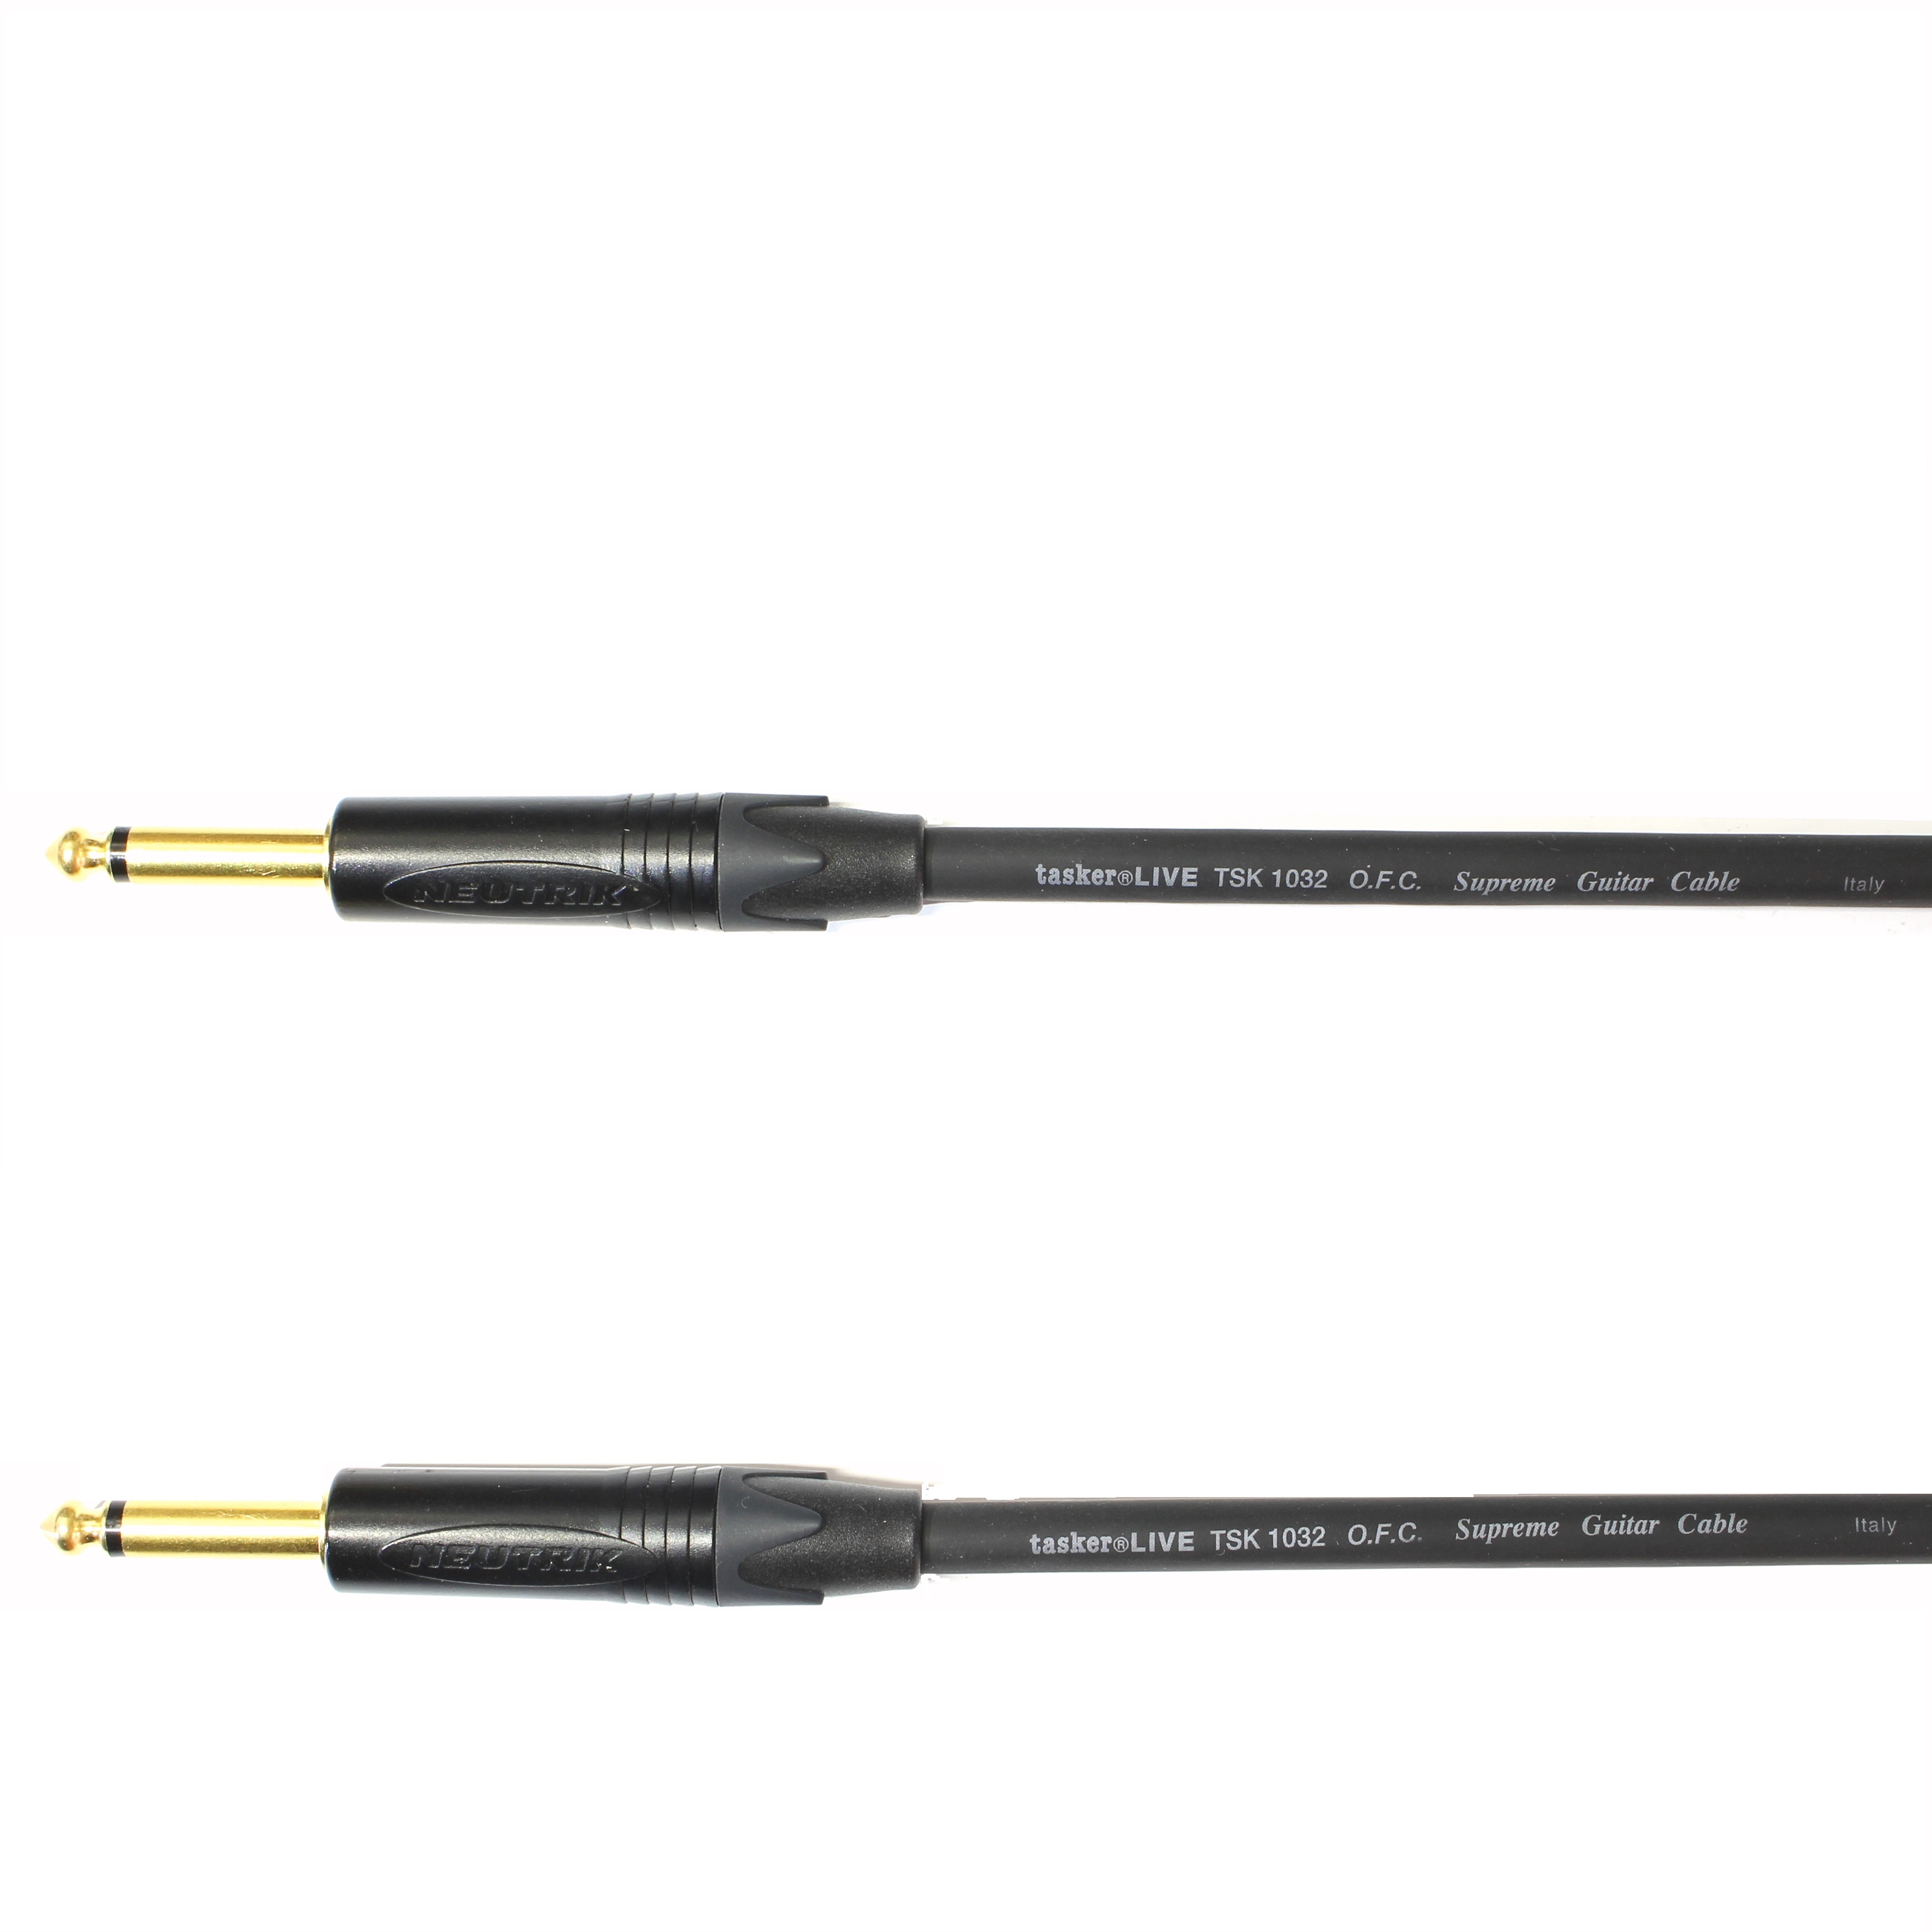 Kytarový kabel Jack 6,3 mono přímý/ Jack 6,3 mono přímý, 6 m, TSK1032